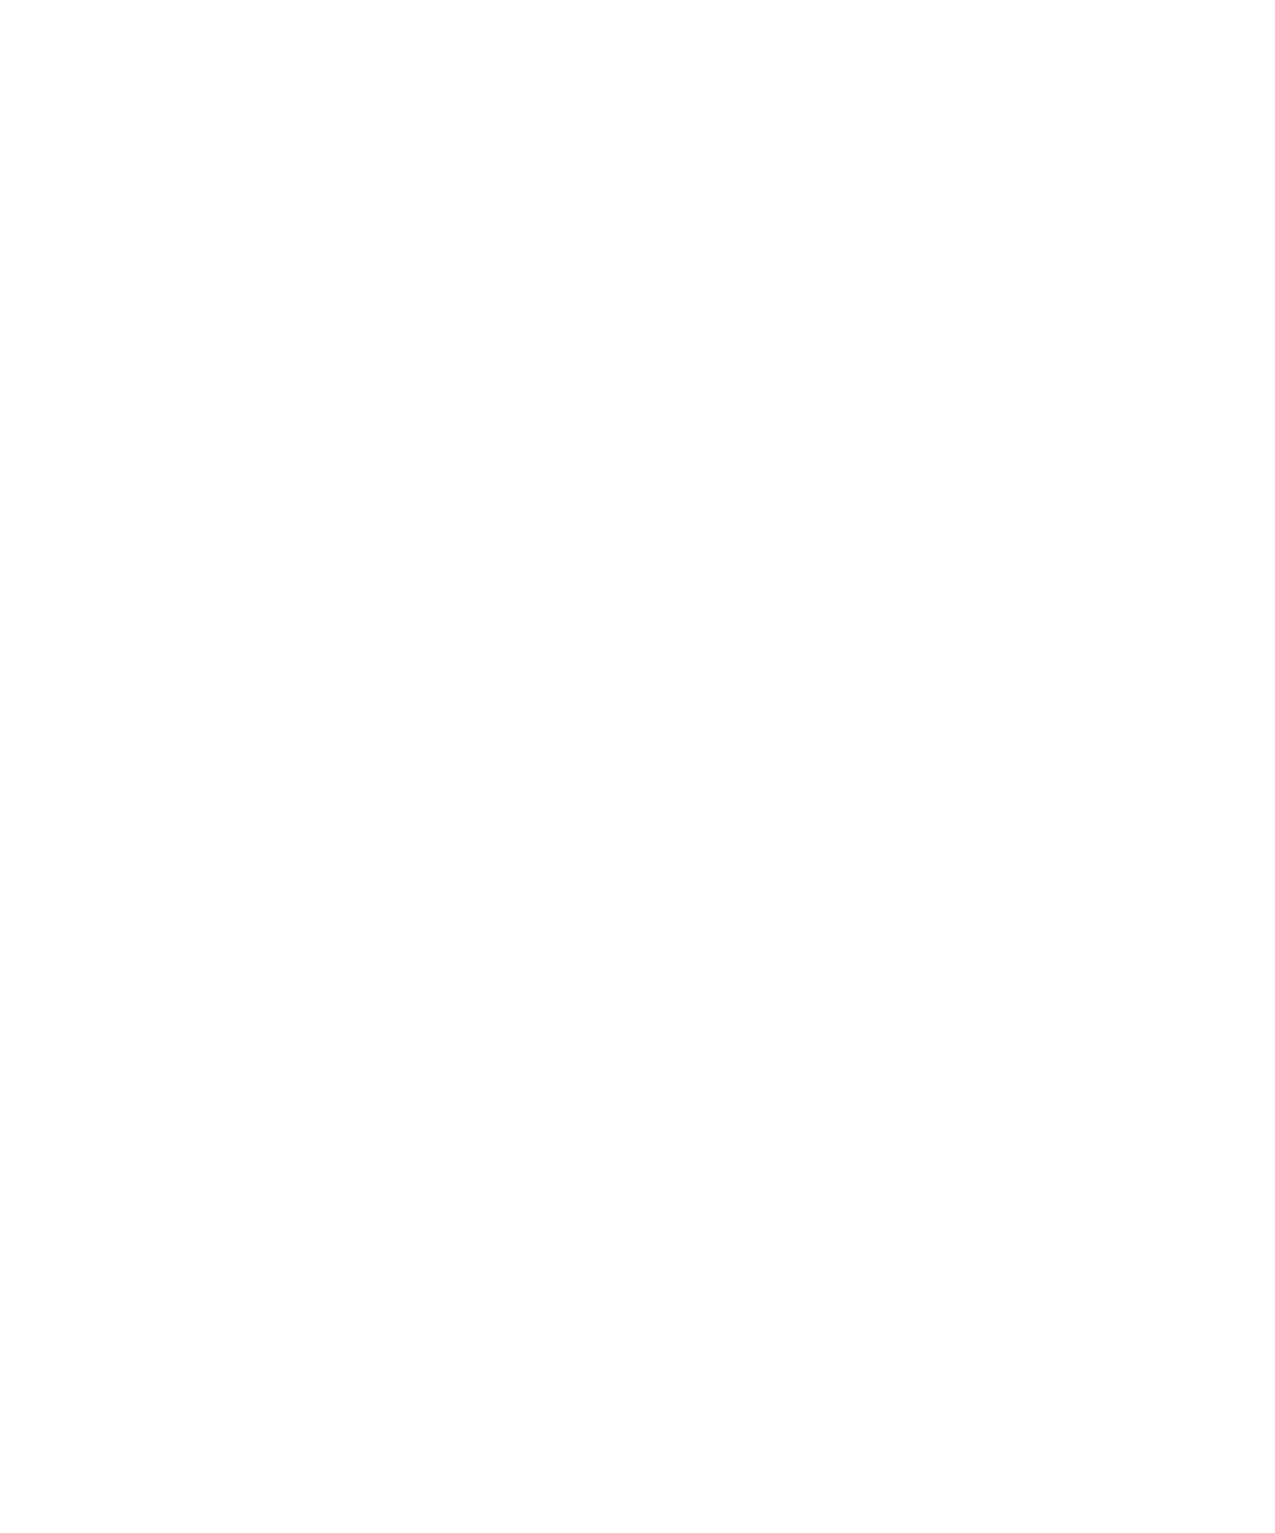 Europris logo pour fonds sombres (PNG transparent)